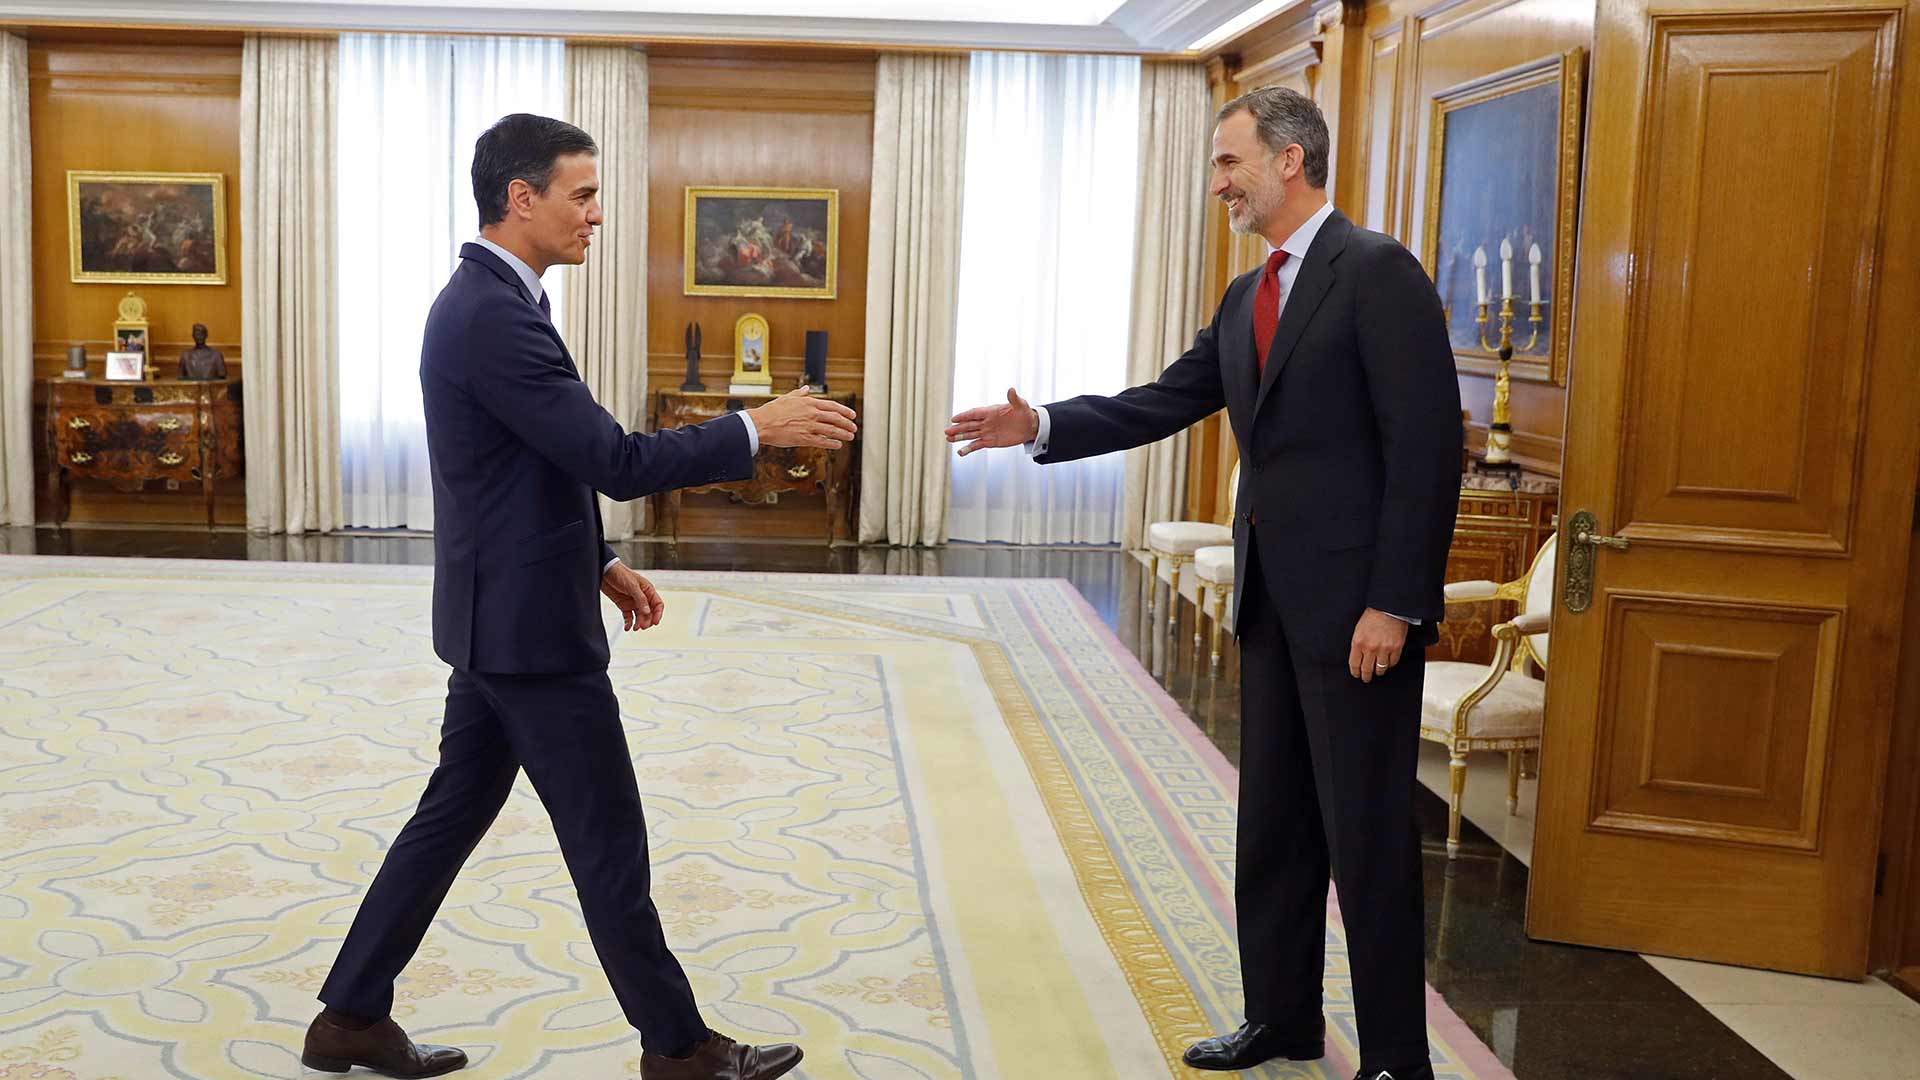 El rey propone como candidato a la investidura a Pedro Sánchez, que acepta el encargo "con honor"